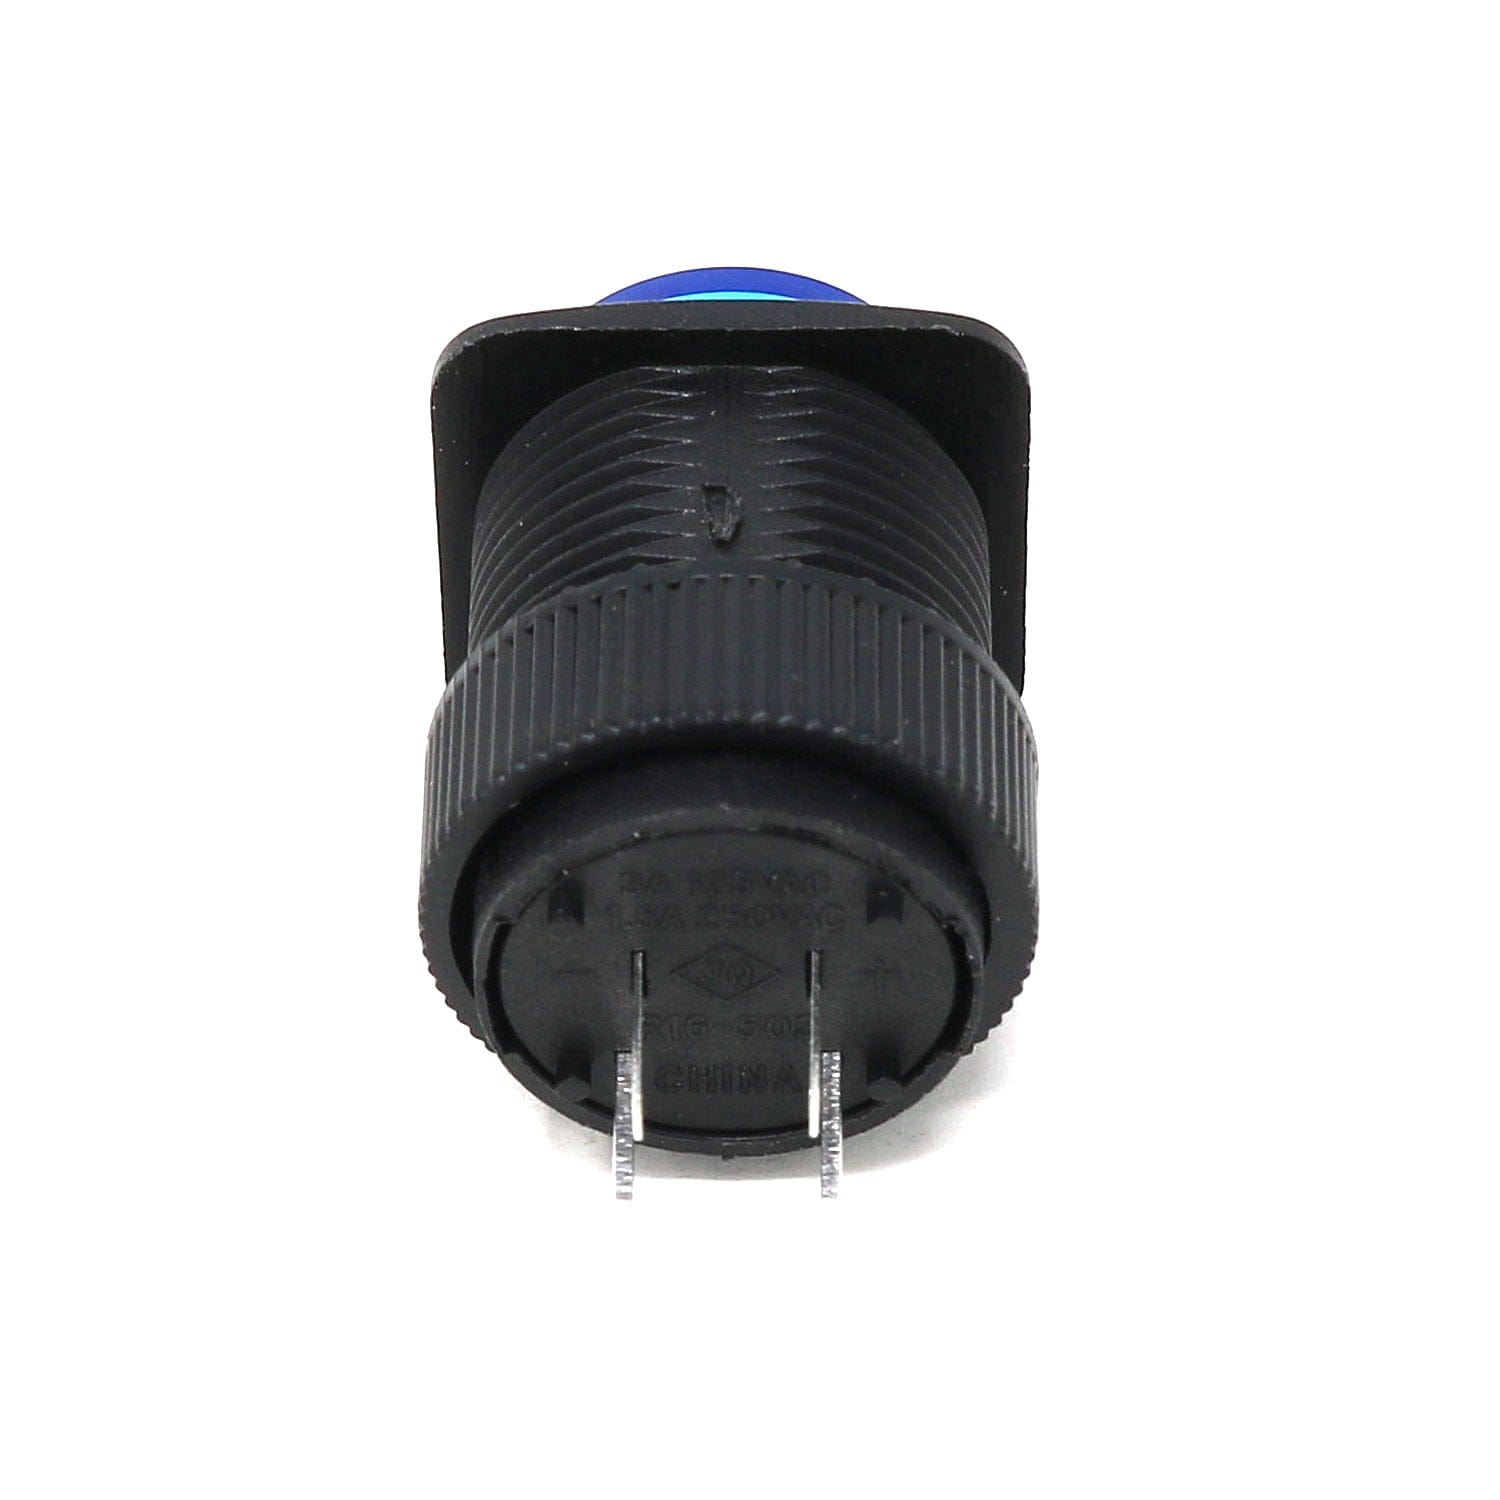 16mm Illuminated Pushbutton - Blue Latching On/Off Switch - The Pi Hut